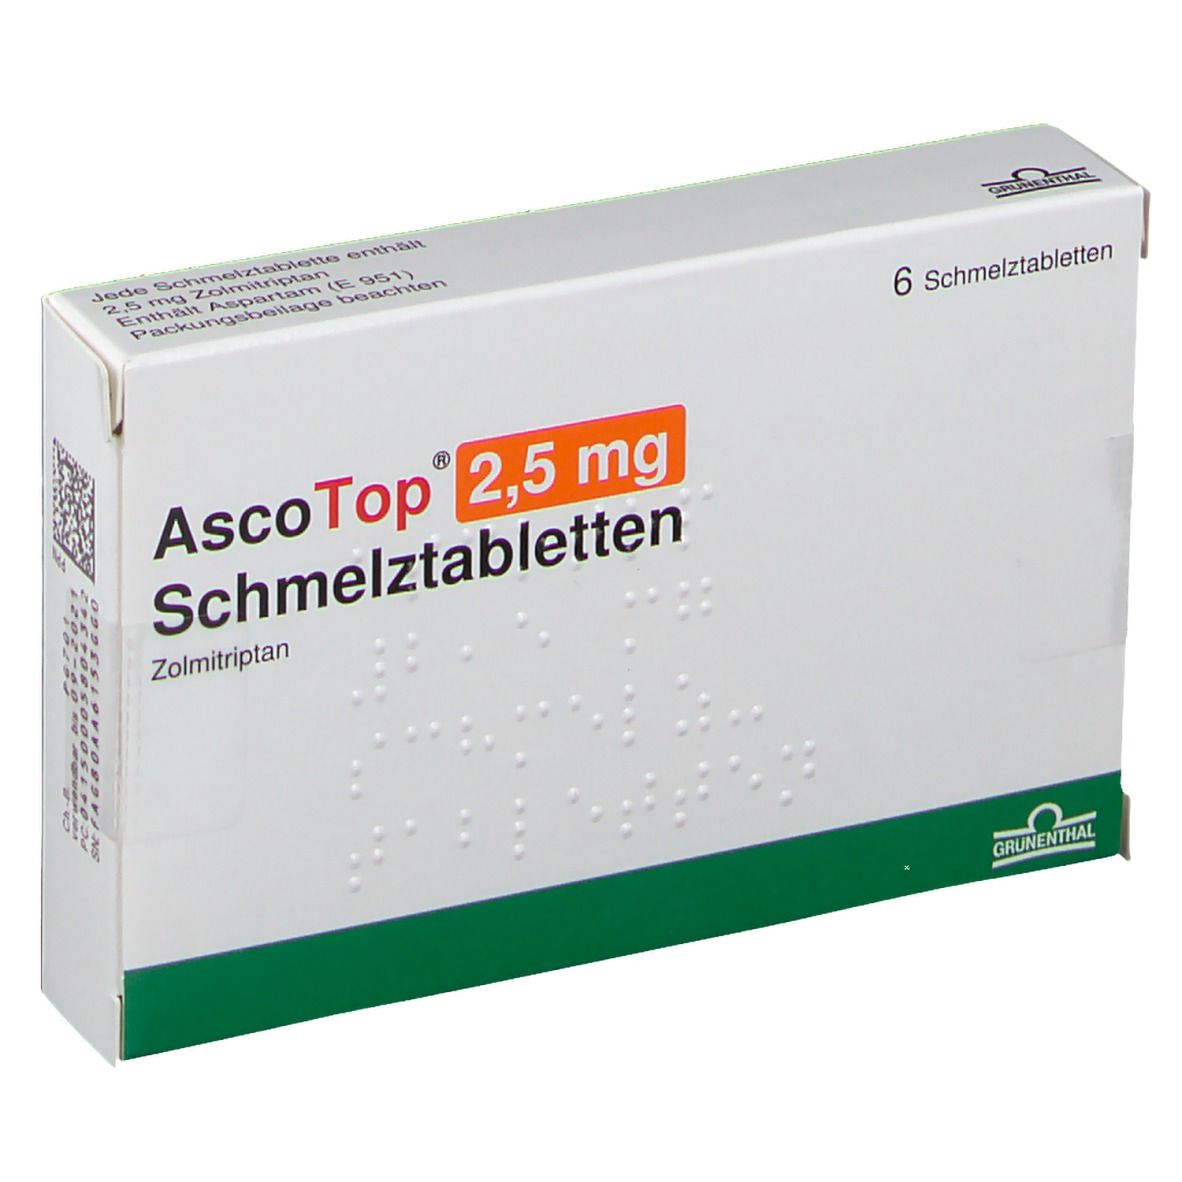 AscoTop® 2,5 mg Schmelztabletten